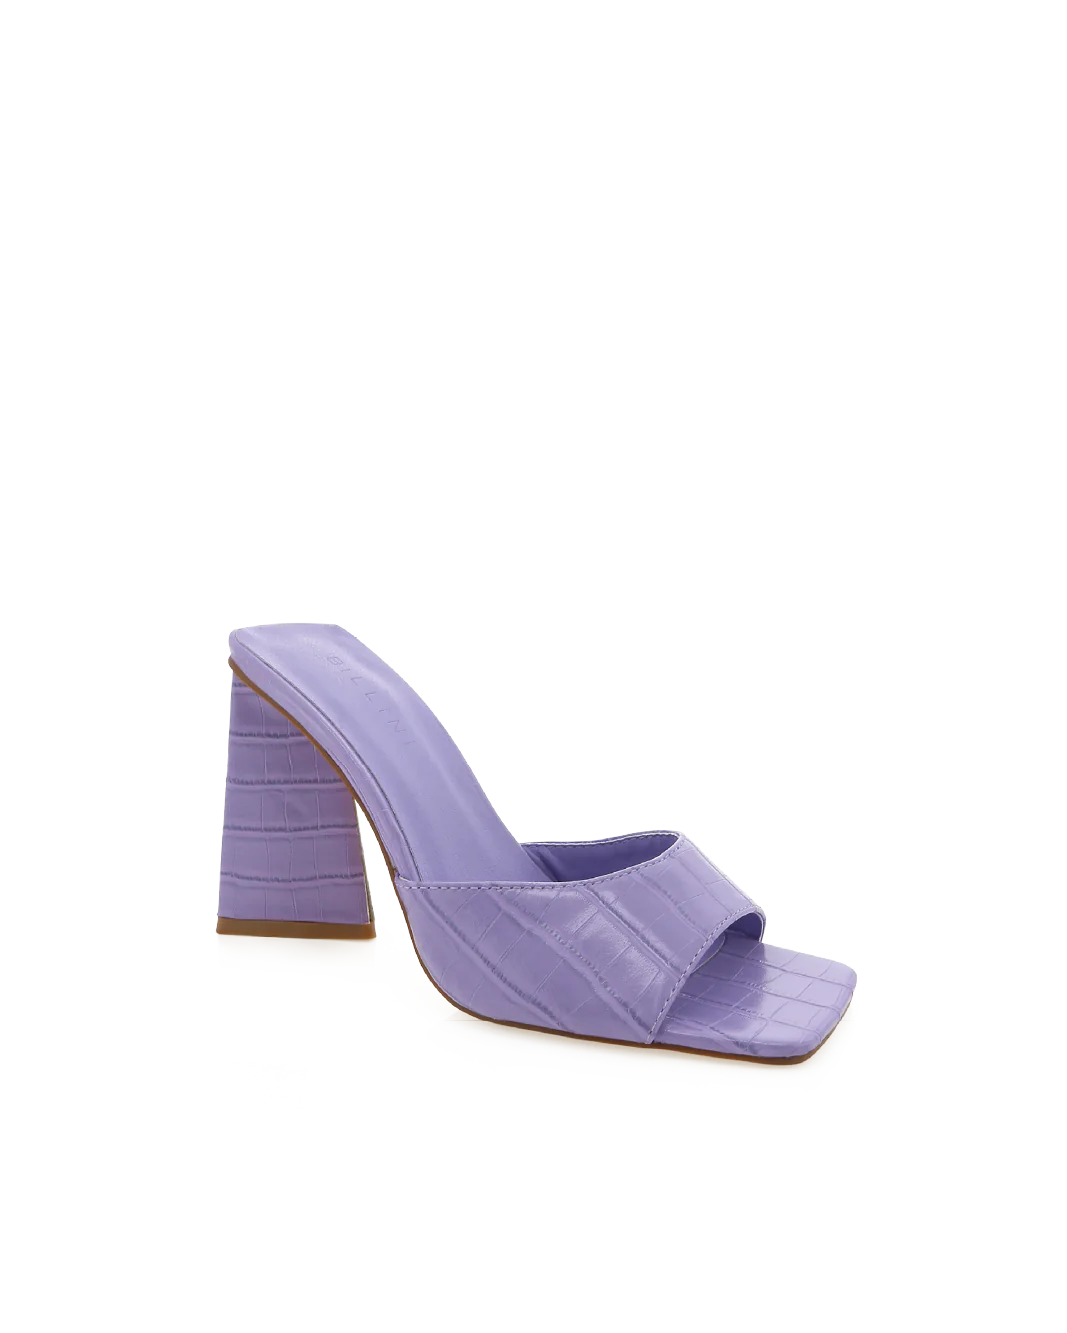 Quinn Croc Slide Lavender, Shoes by Billini | LIT Boutique